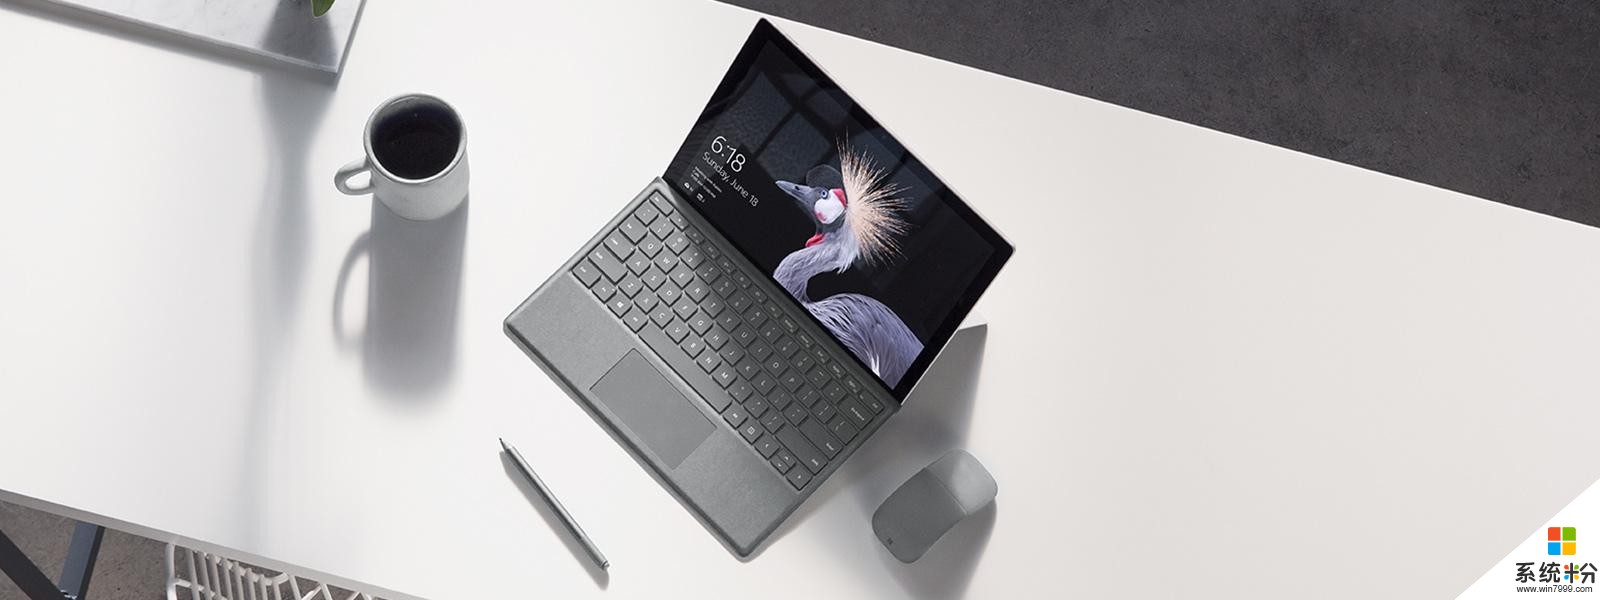 微軟發布全新Surface Pro: 入門版僅5888元 配4096級別壓感筆(3)